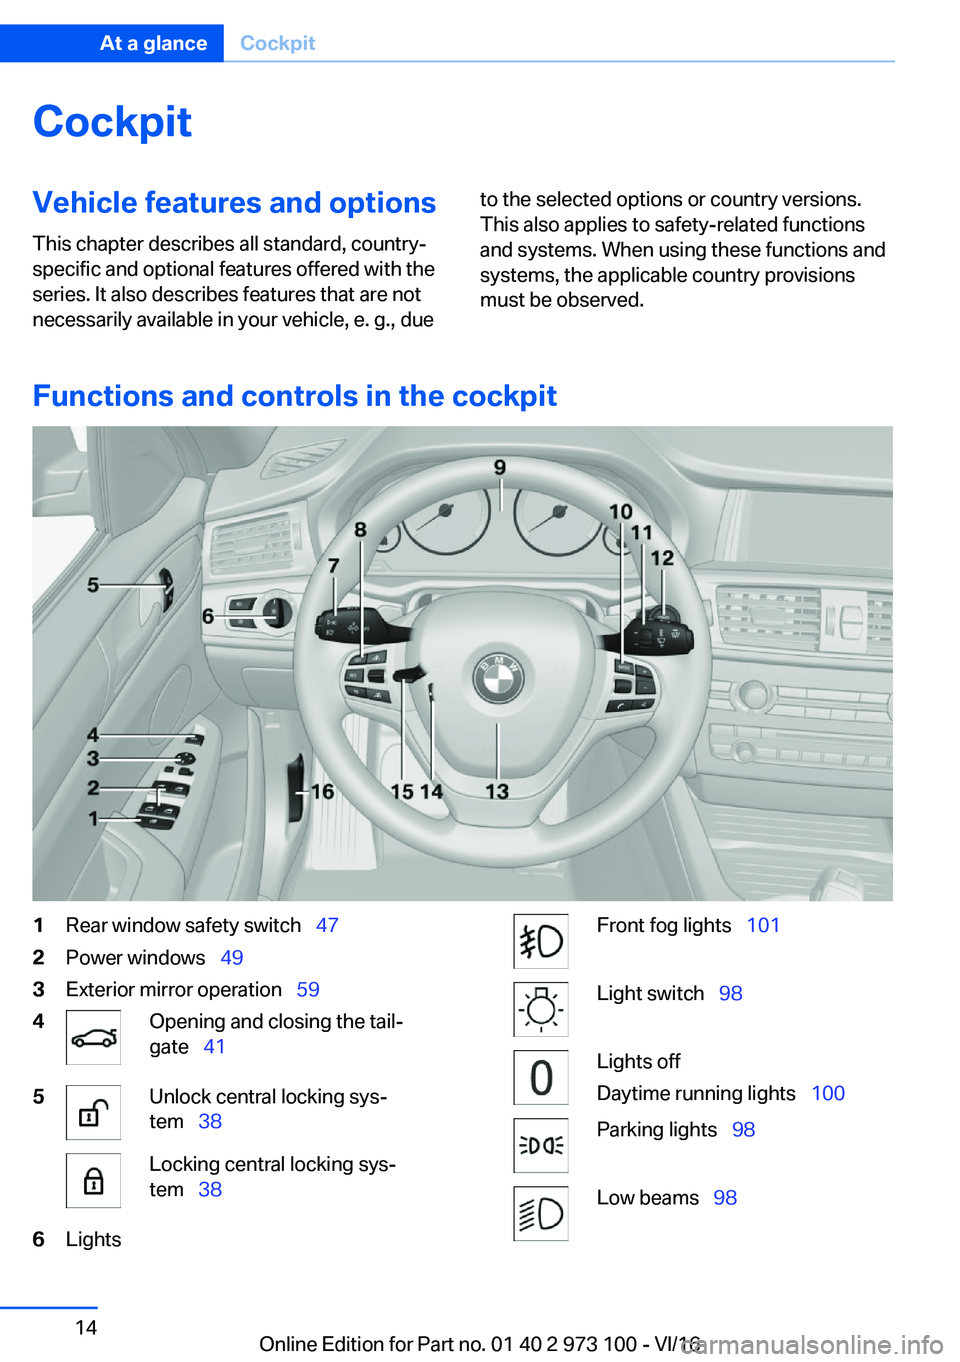 BMW X4 2017 User Guide �C�o�c�k�p�i�t�V�e�h�i�c�l�e��f�e�a�t�u�r�e�s��a�n�d��o�p�t�i�o�n�s
�T�h�i�s� �c�h�a�p�t�e�r� �d�e�s�c�r�i�b�e�s� �a�l�l� �s�t�a�n�d�a�r�d�,� �c�o�u�n�t�r�y�- �s�p�e�c�i�f�i�c� �a�n�d� �o�p�t�i�o�n